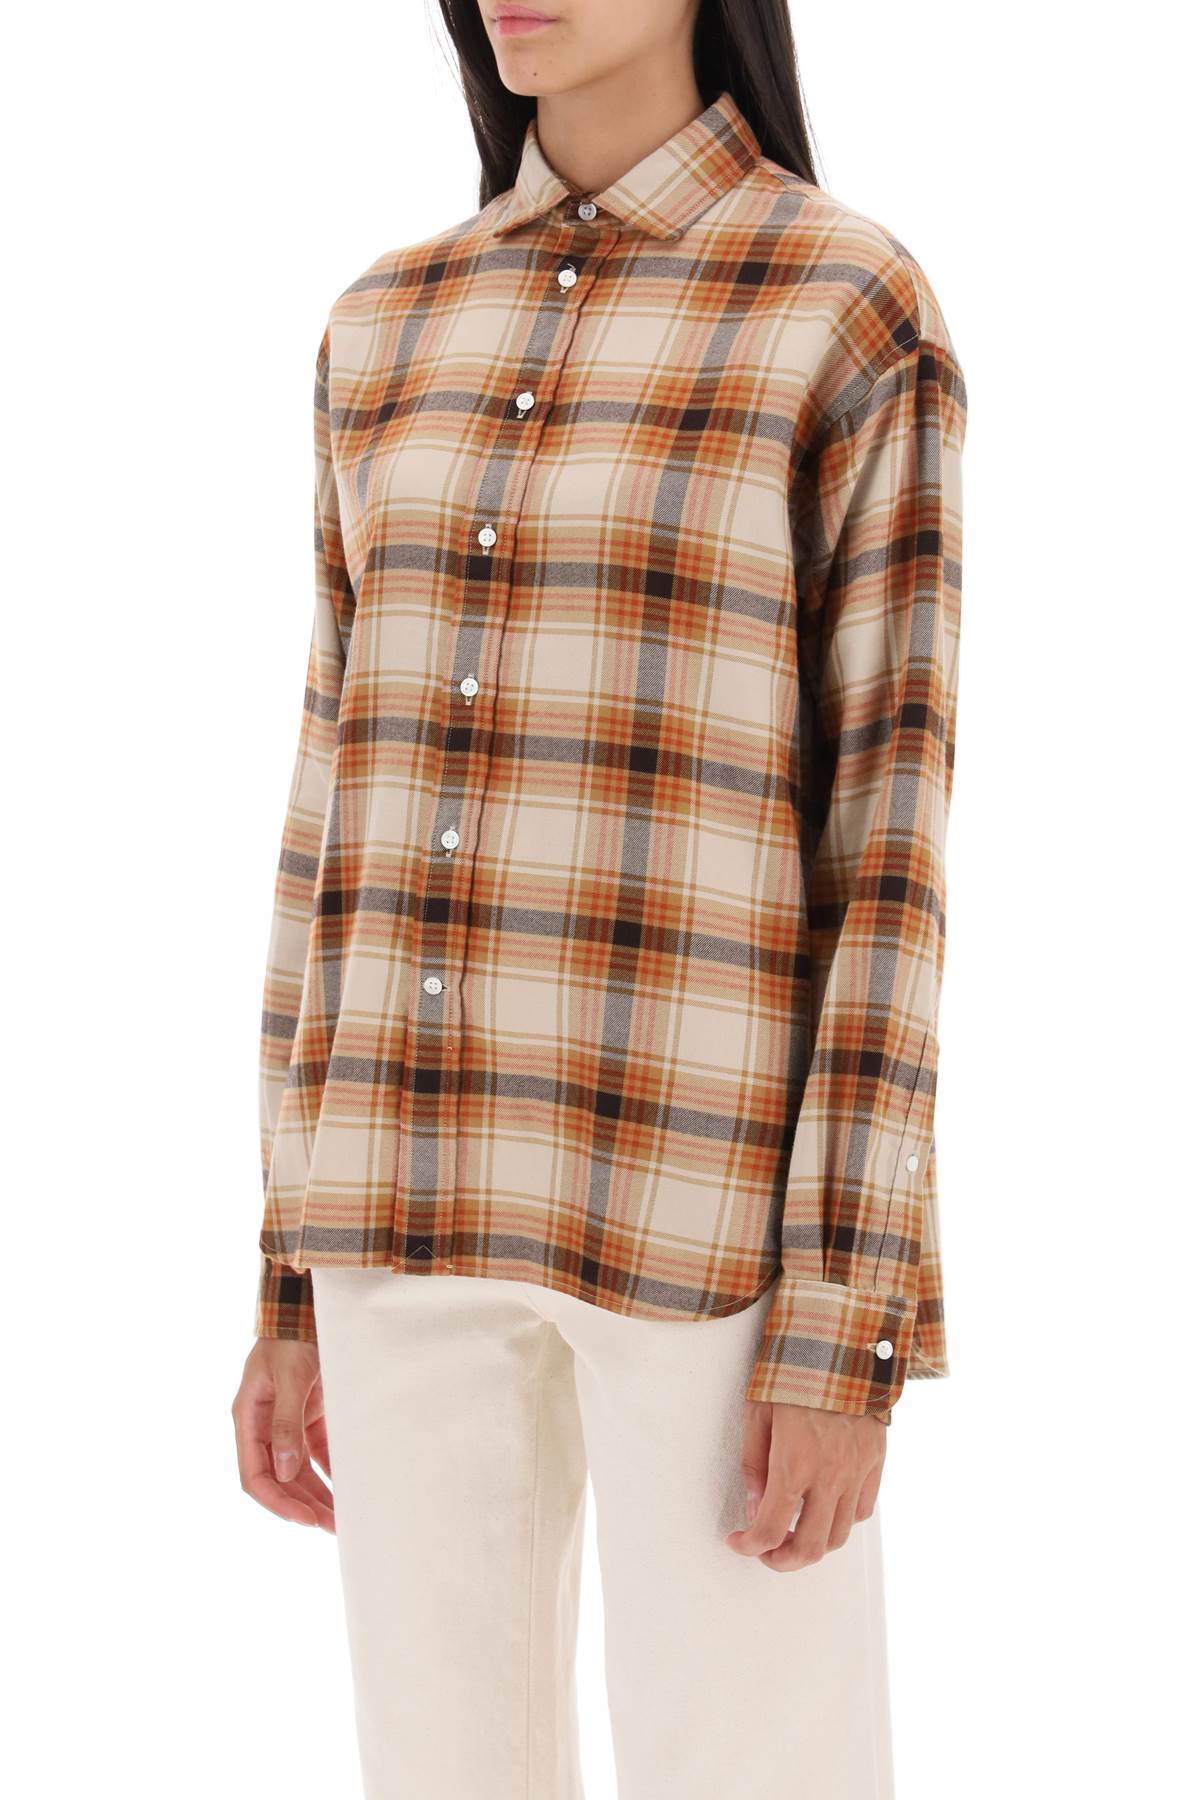 Polo ralph lauren check flannel shirt-3